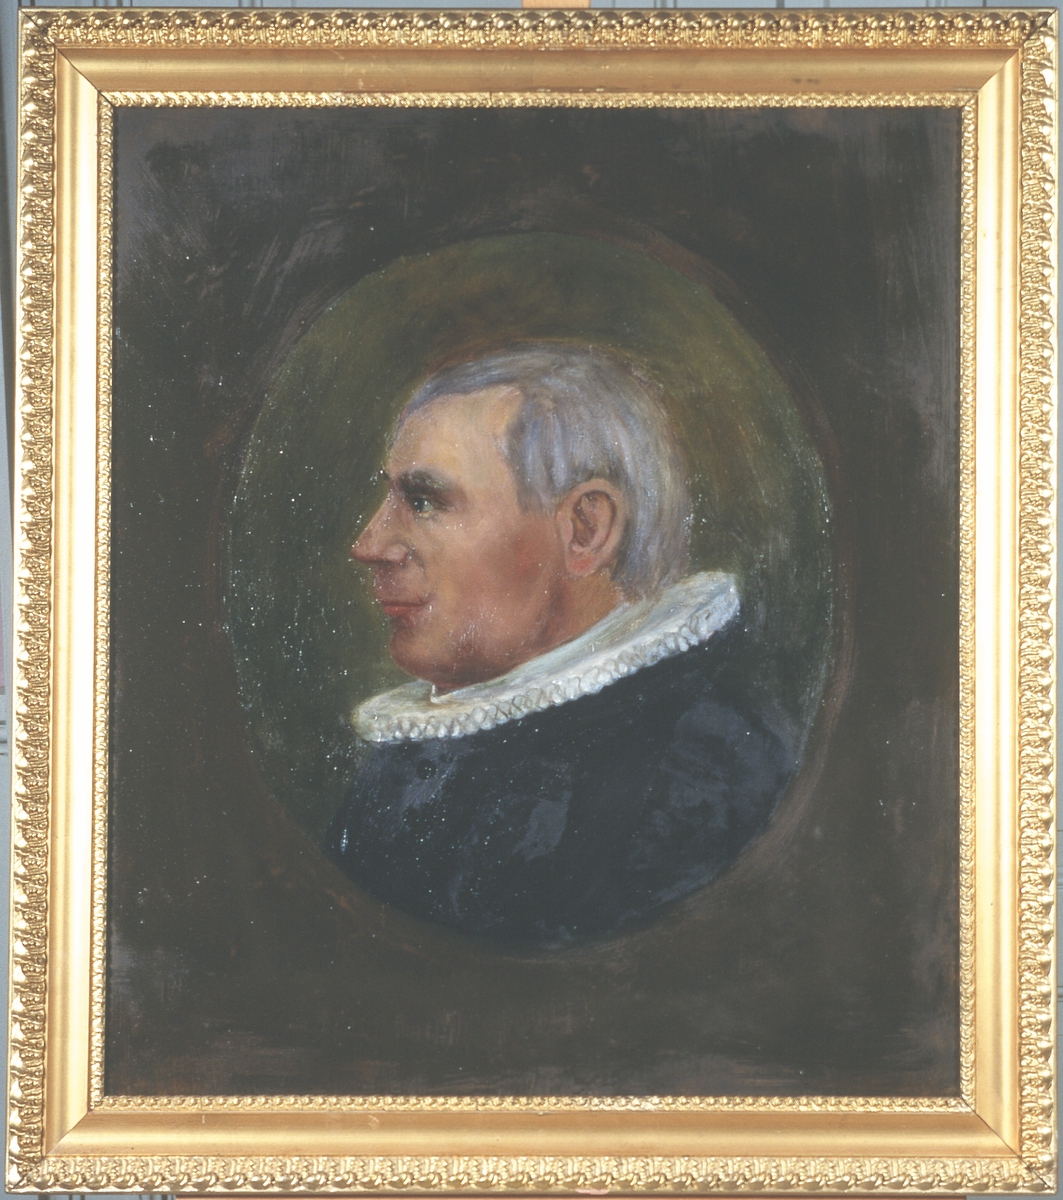 Portrett av eidsvollmann Jens Stub
Mann med grått hår og prestedrakt, profil
Innskrevet i oval, lysere enn resten av bakgrunnen.